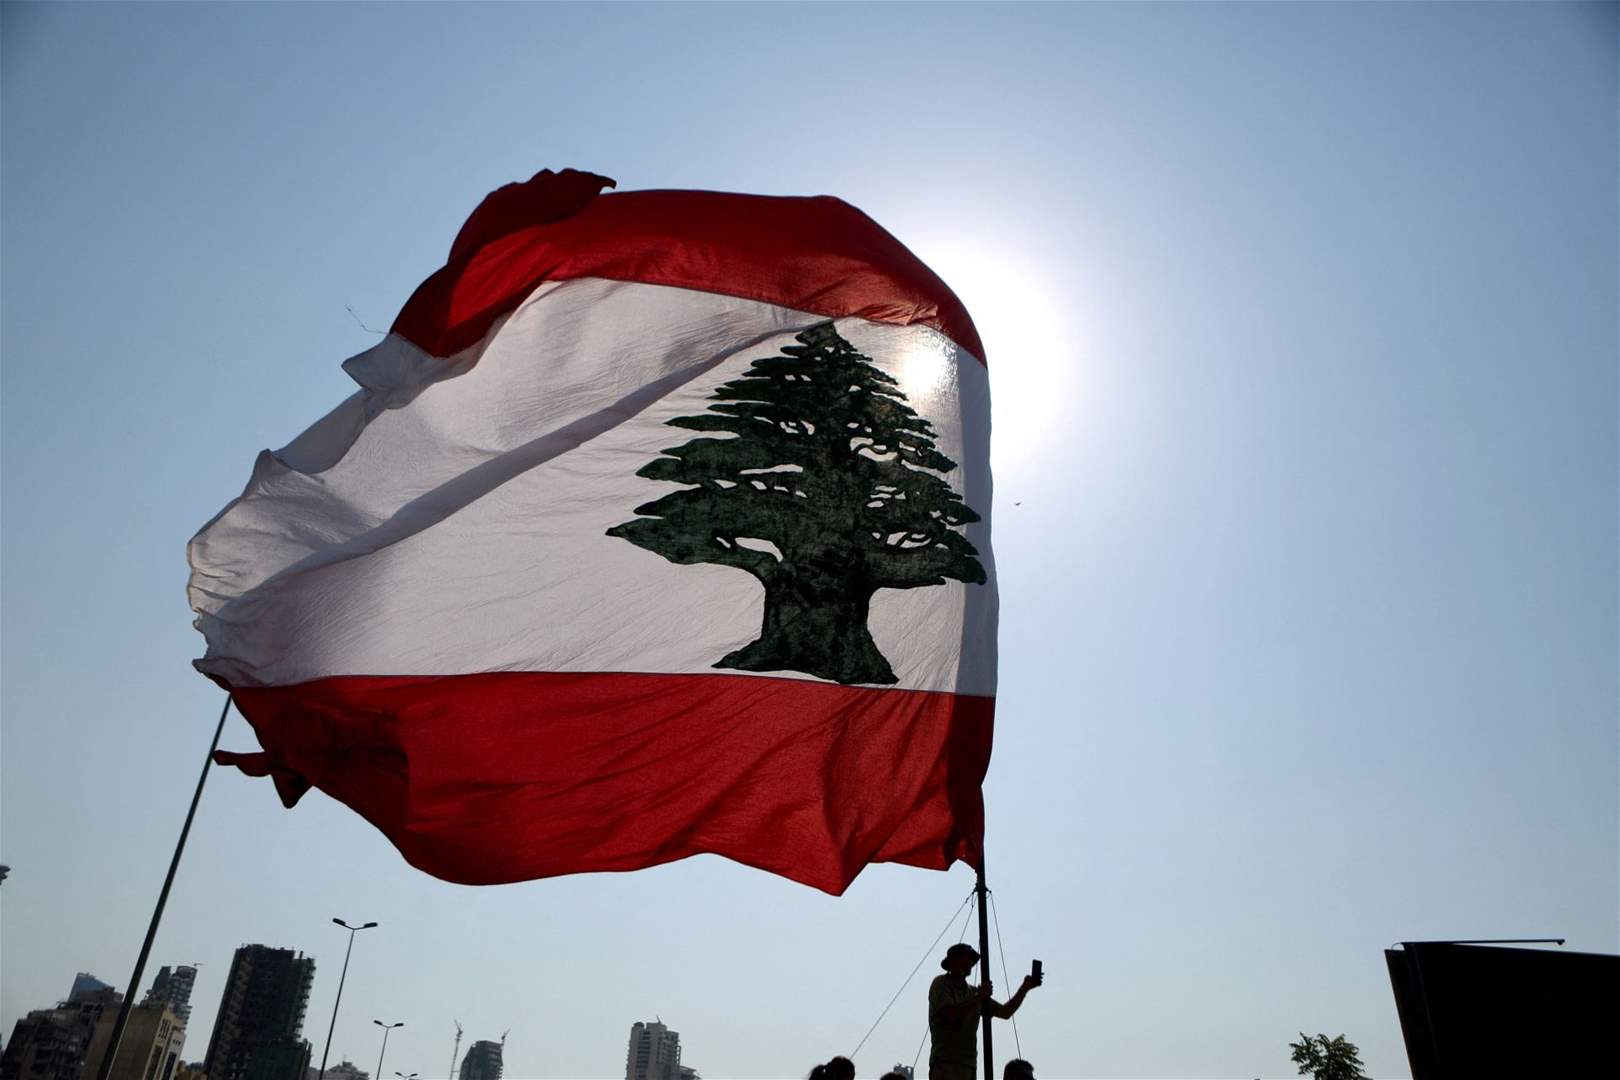     البنك الدولي: لبنان أضاع وقتاً ثميناً وعليه الآن اتّخاذ إجراءات عاجلة